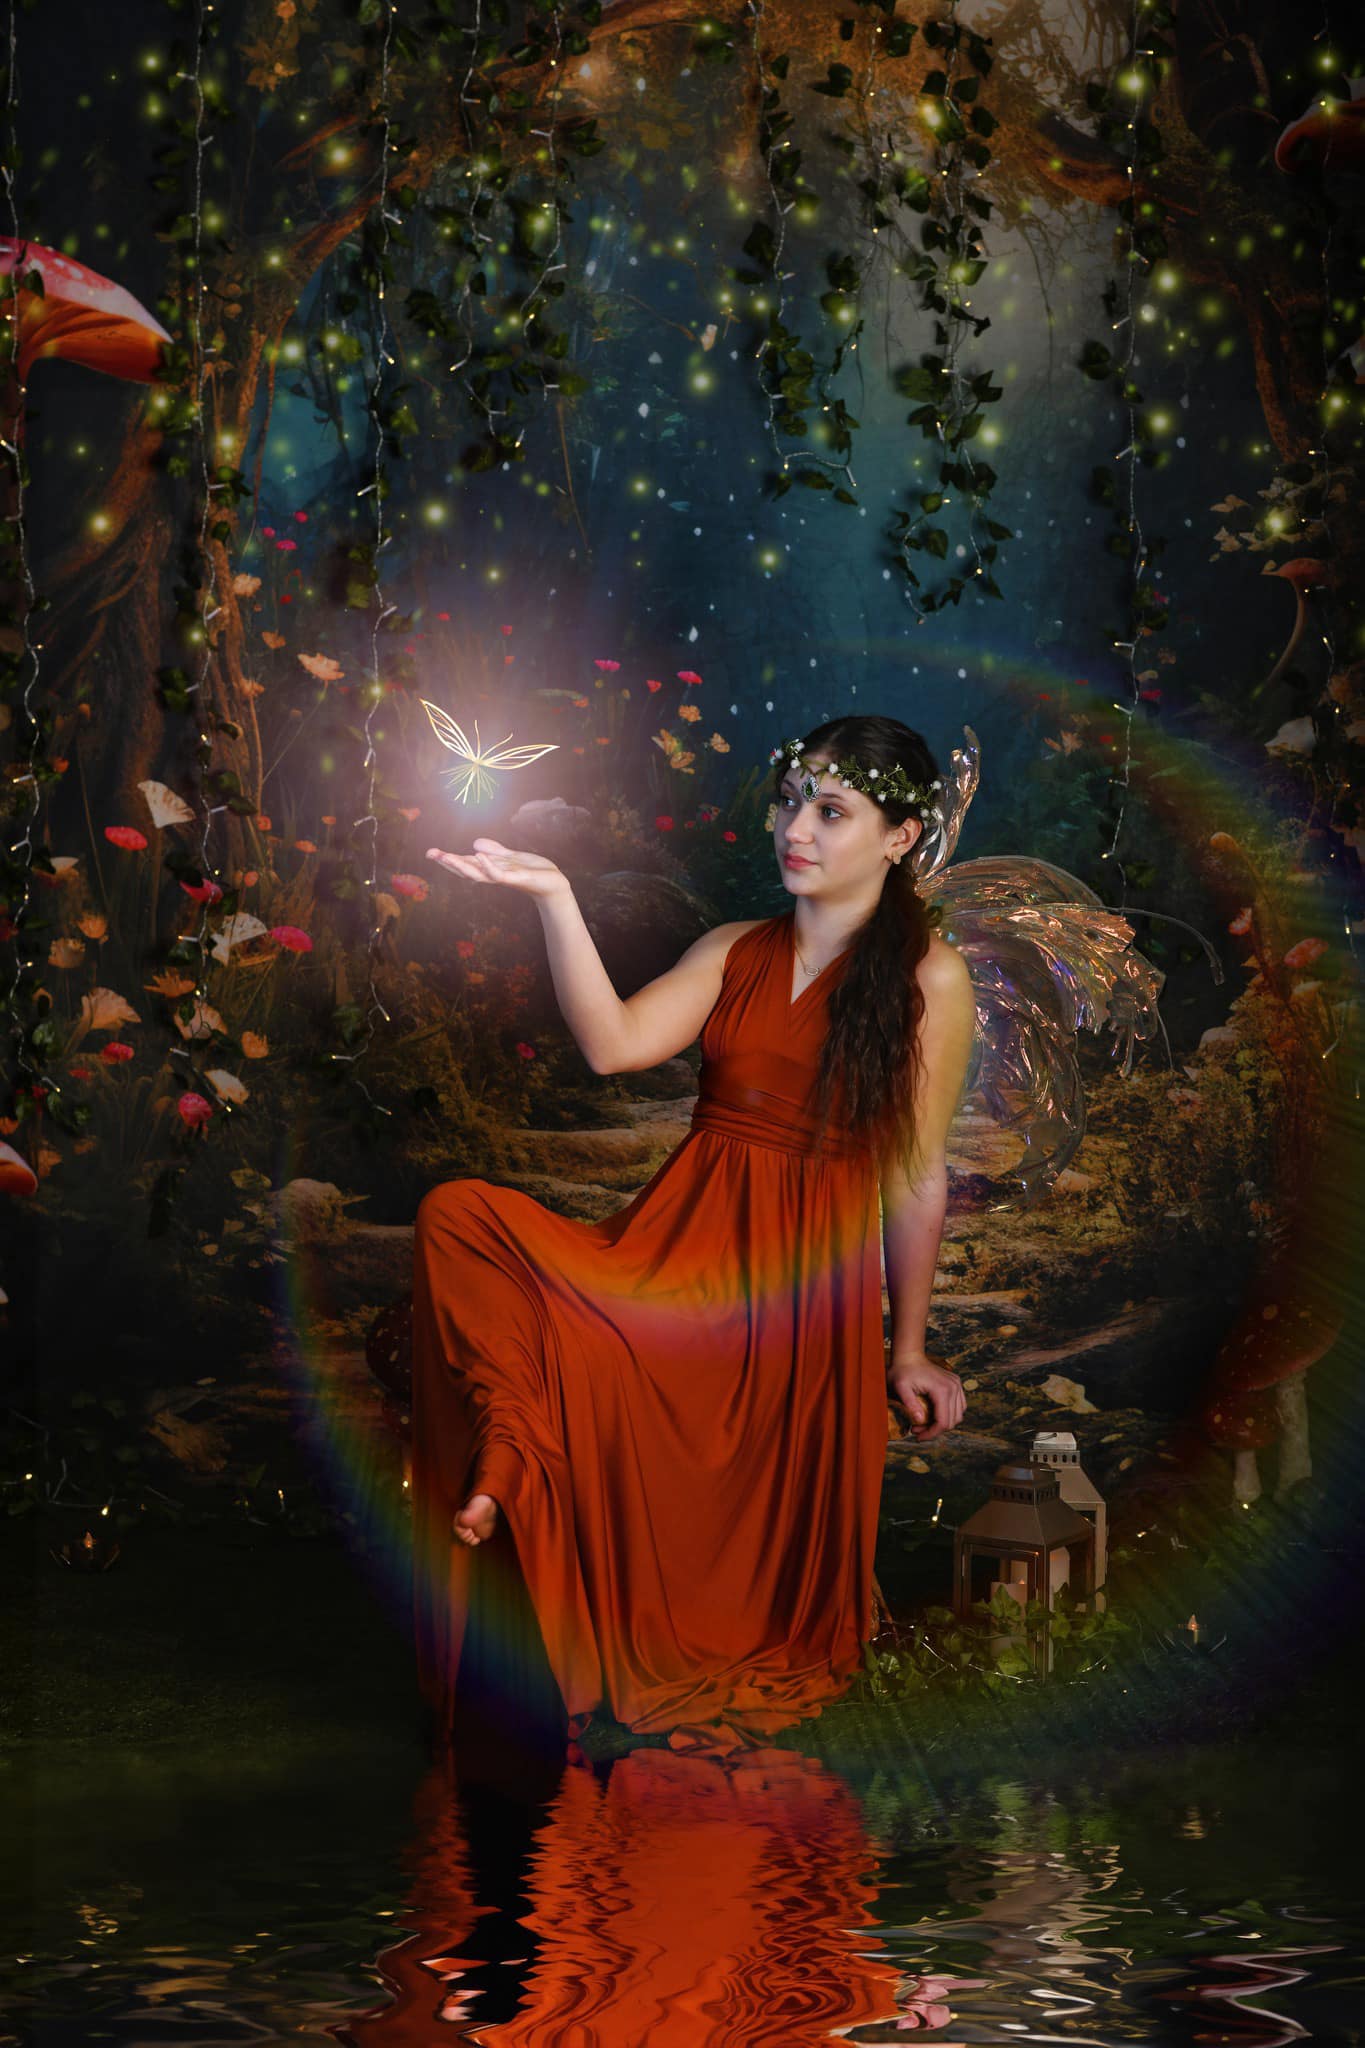 Super Sale-C Kate Fantasy Glühwürmchen Pilz Wald Hintergrund für Fotografie von Chain Photography